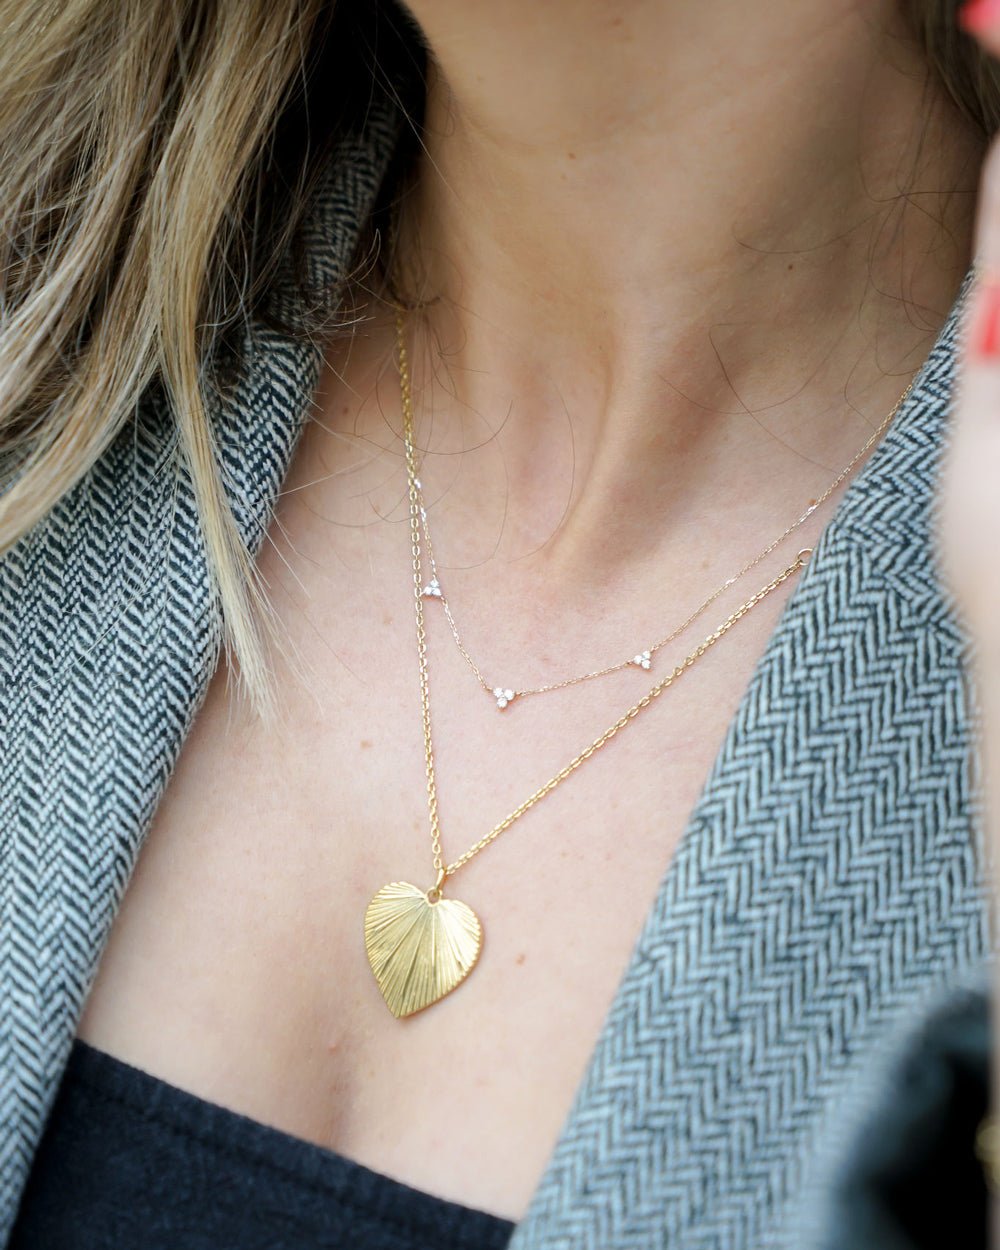 Heart Pendant Necklaces | Heart Pendant Necklace Gold | Abbott Lyon